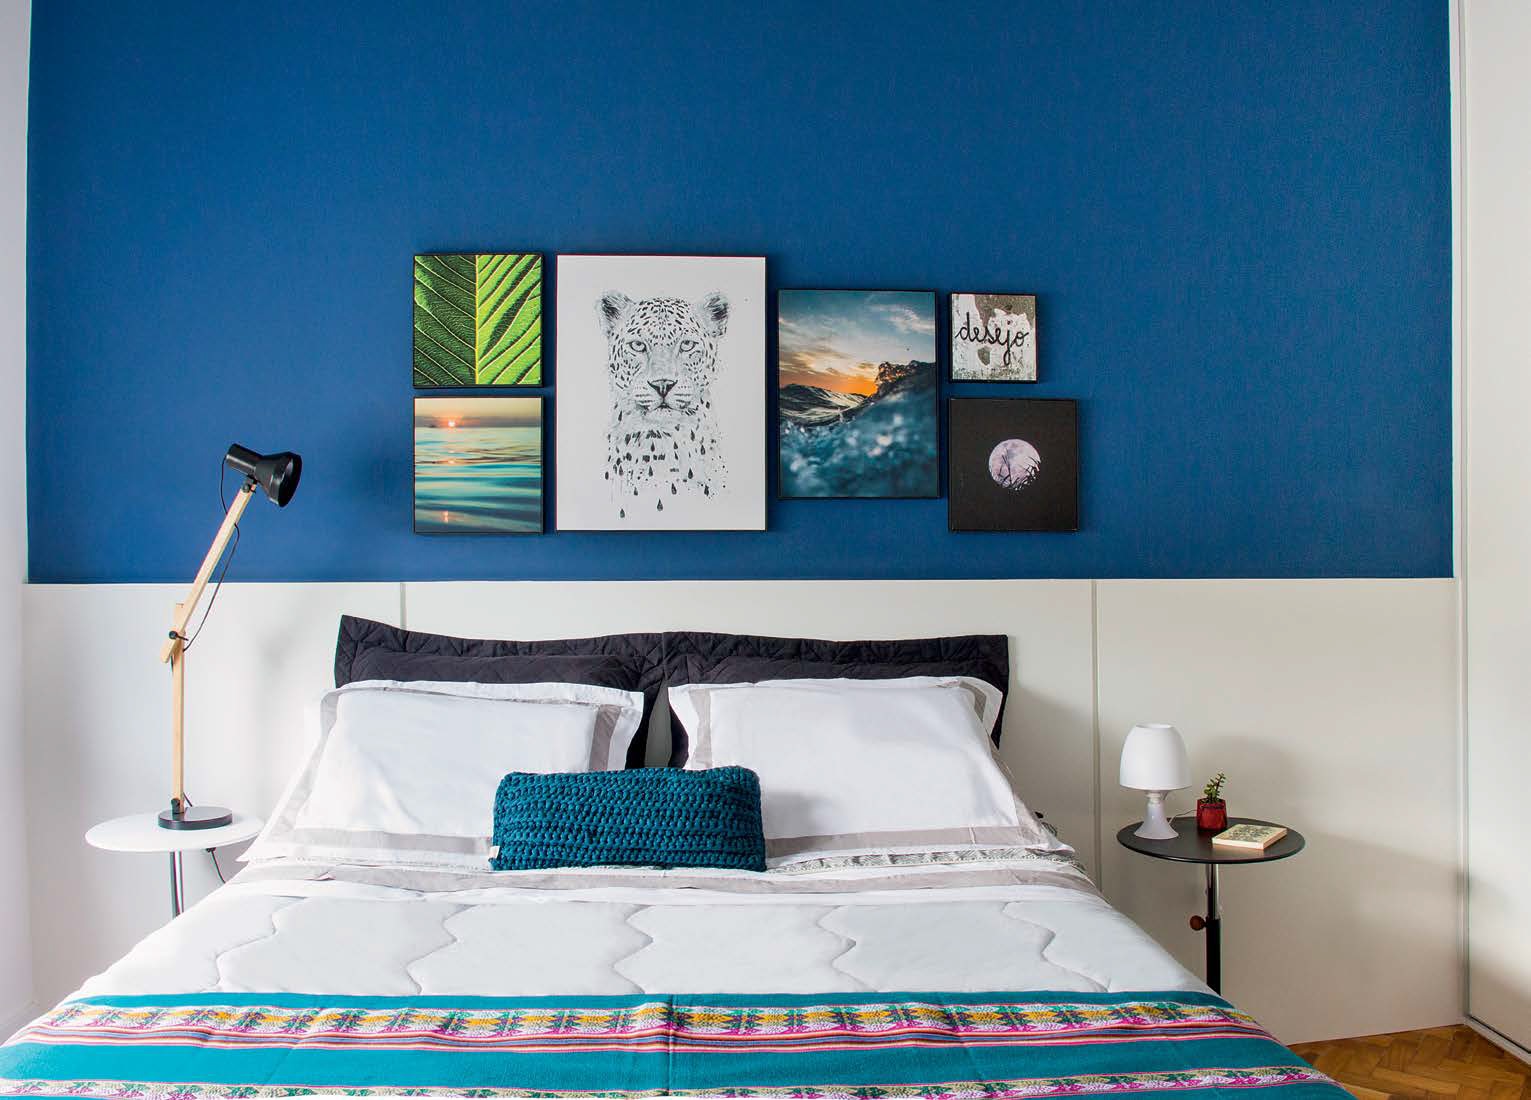  8 dviviečiai miegamieji su mėlynomis sienomis